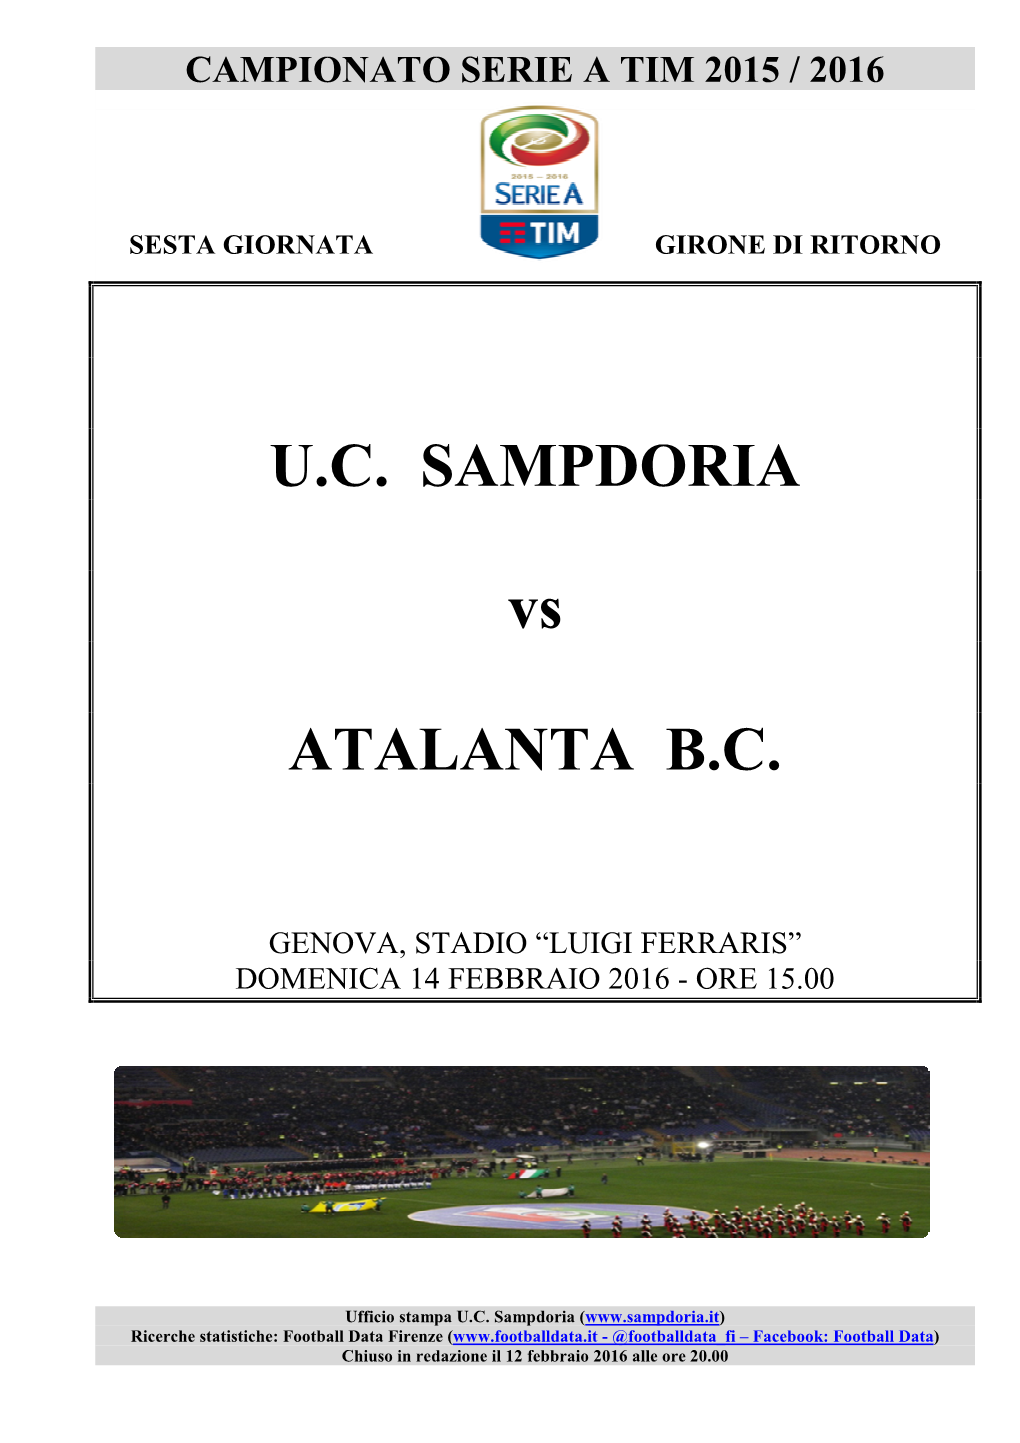 Sampdoria-Atalanta È Il Confronto Tra Due Delle 3 Squadre Della Serie a 2015/16 Che Hanno Subito Il Maggior Numero Di Rigori, Dopo 24 Giornate Di Campionato